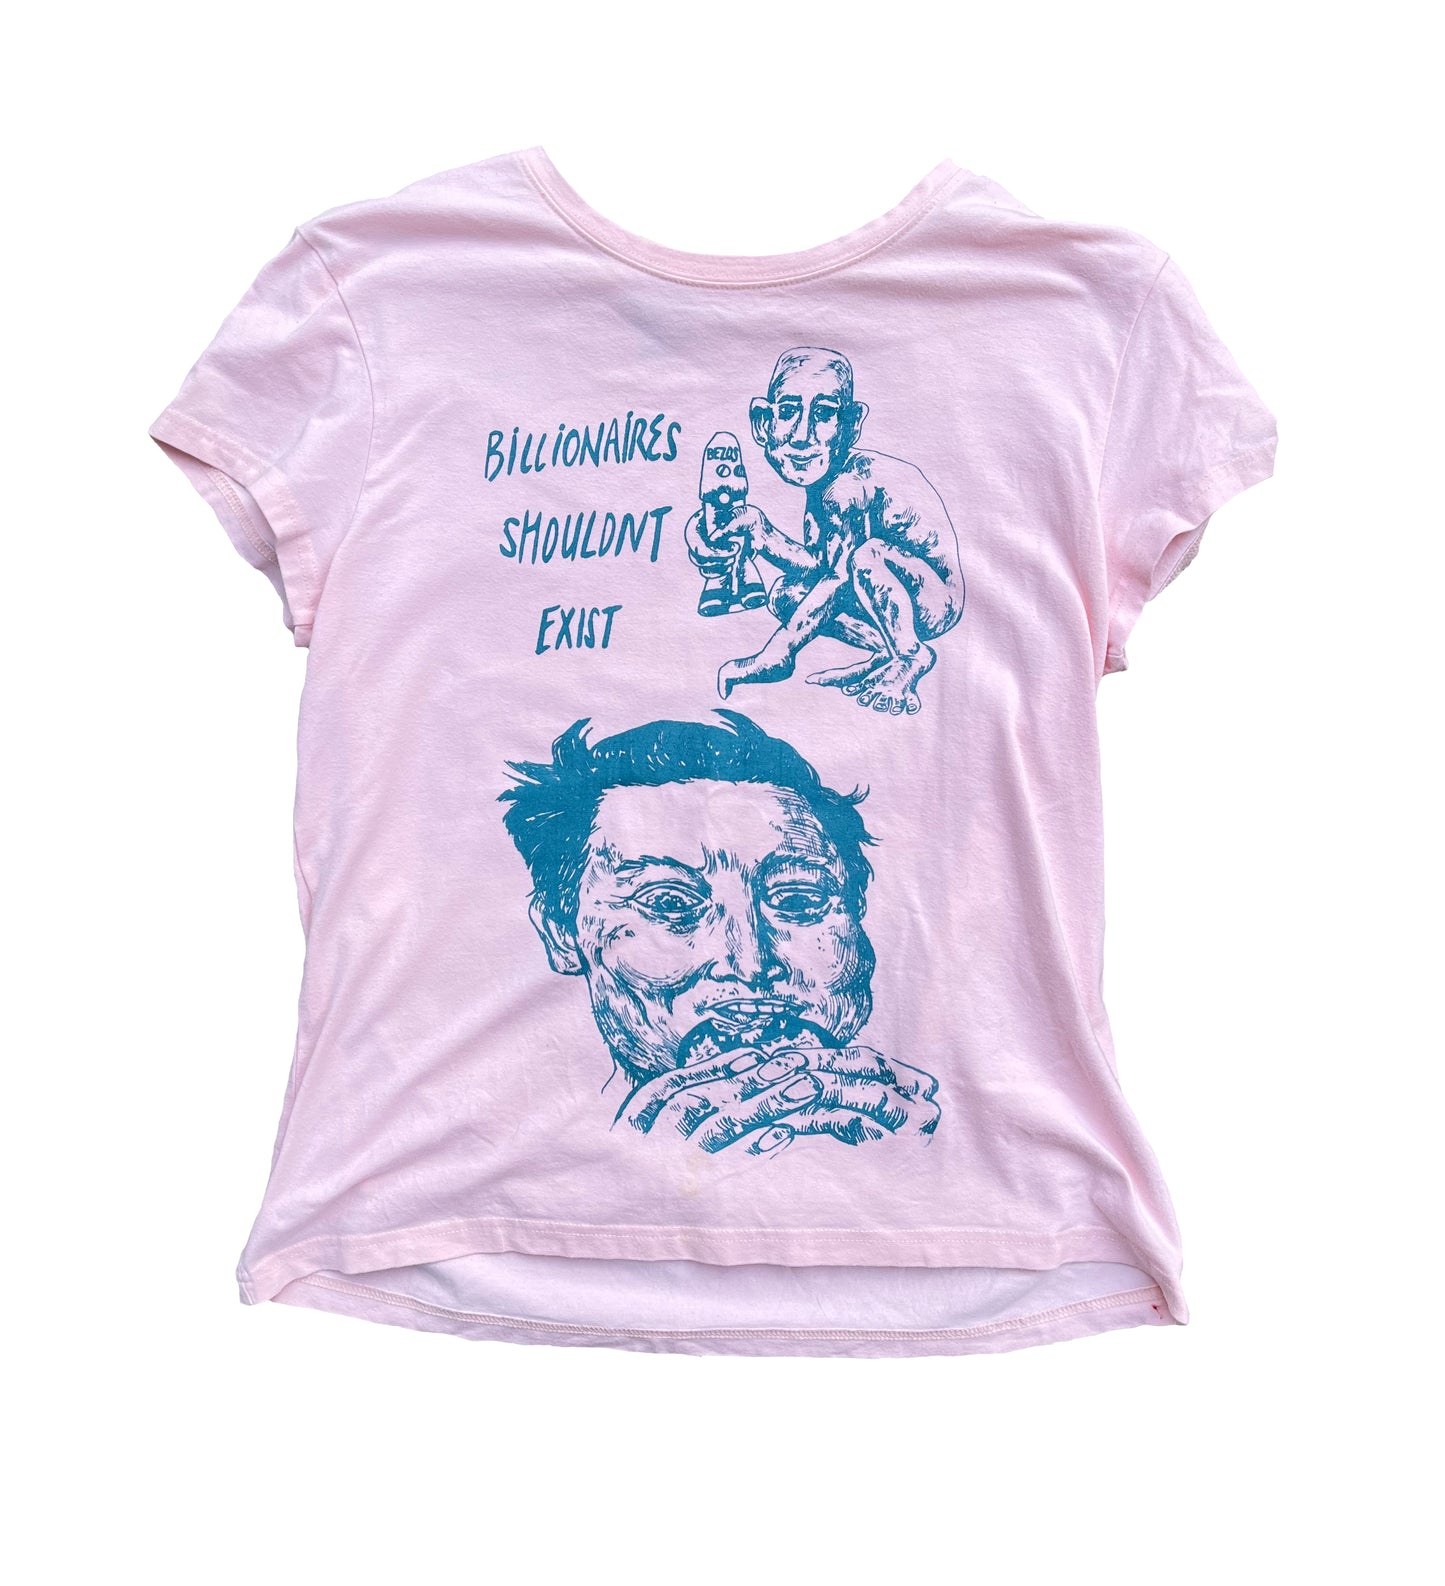 XL Billionaires Shouldnt Exist pink graphic tee shirt 12